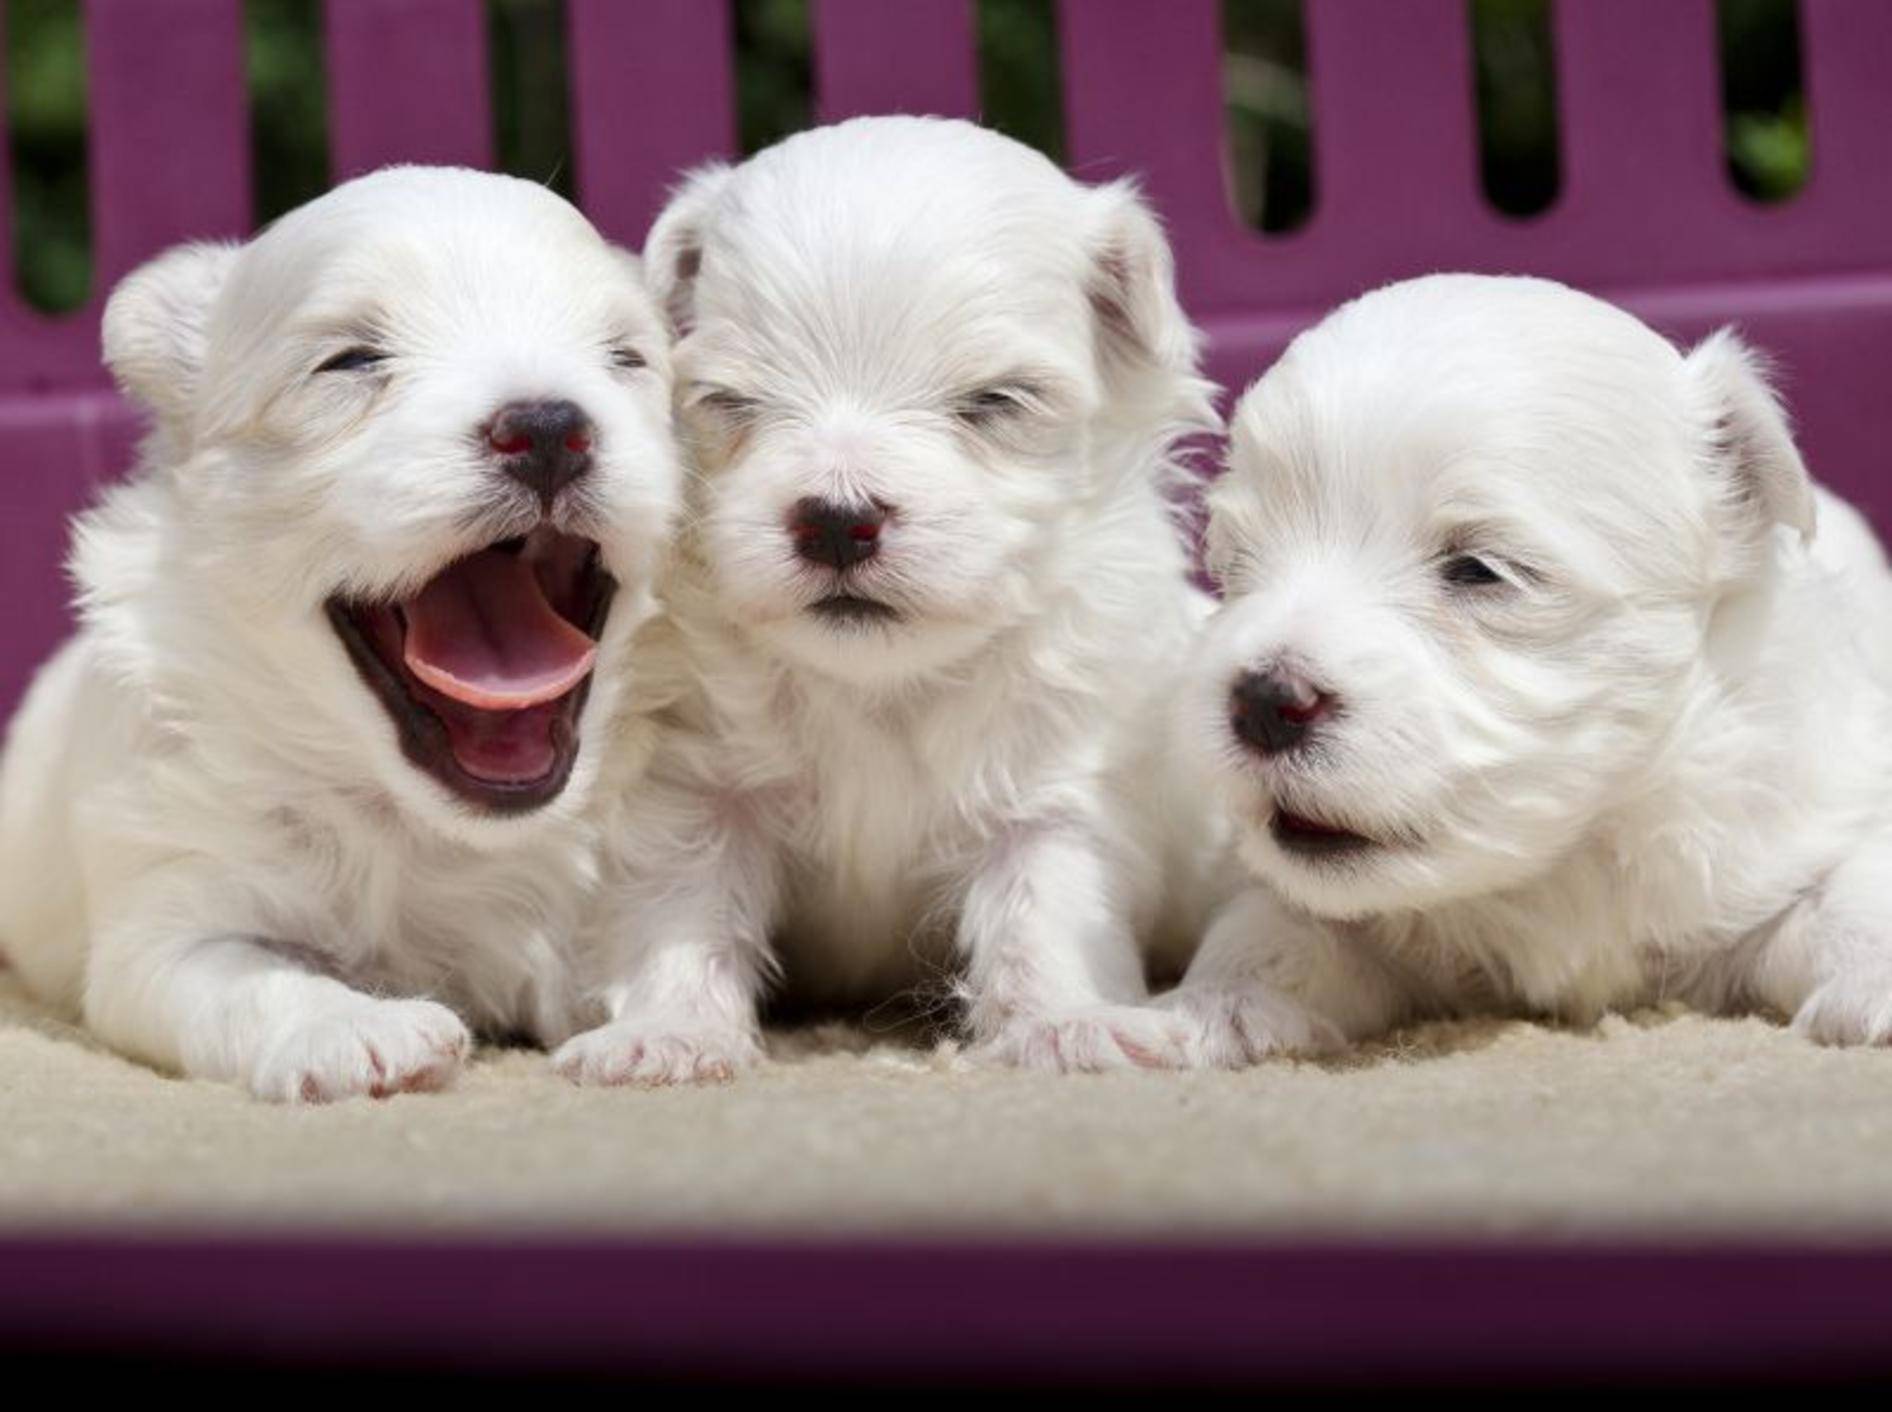 Augen auf und los geht's: In dieser Phase sind Hundebabys besonders neugierig – Bild: Shutterstock / TheLionRoar